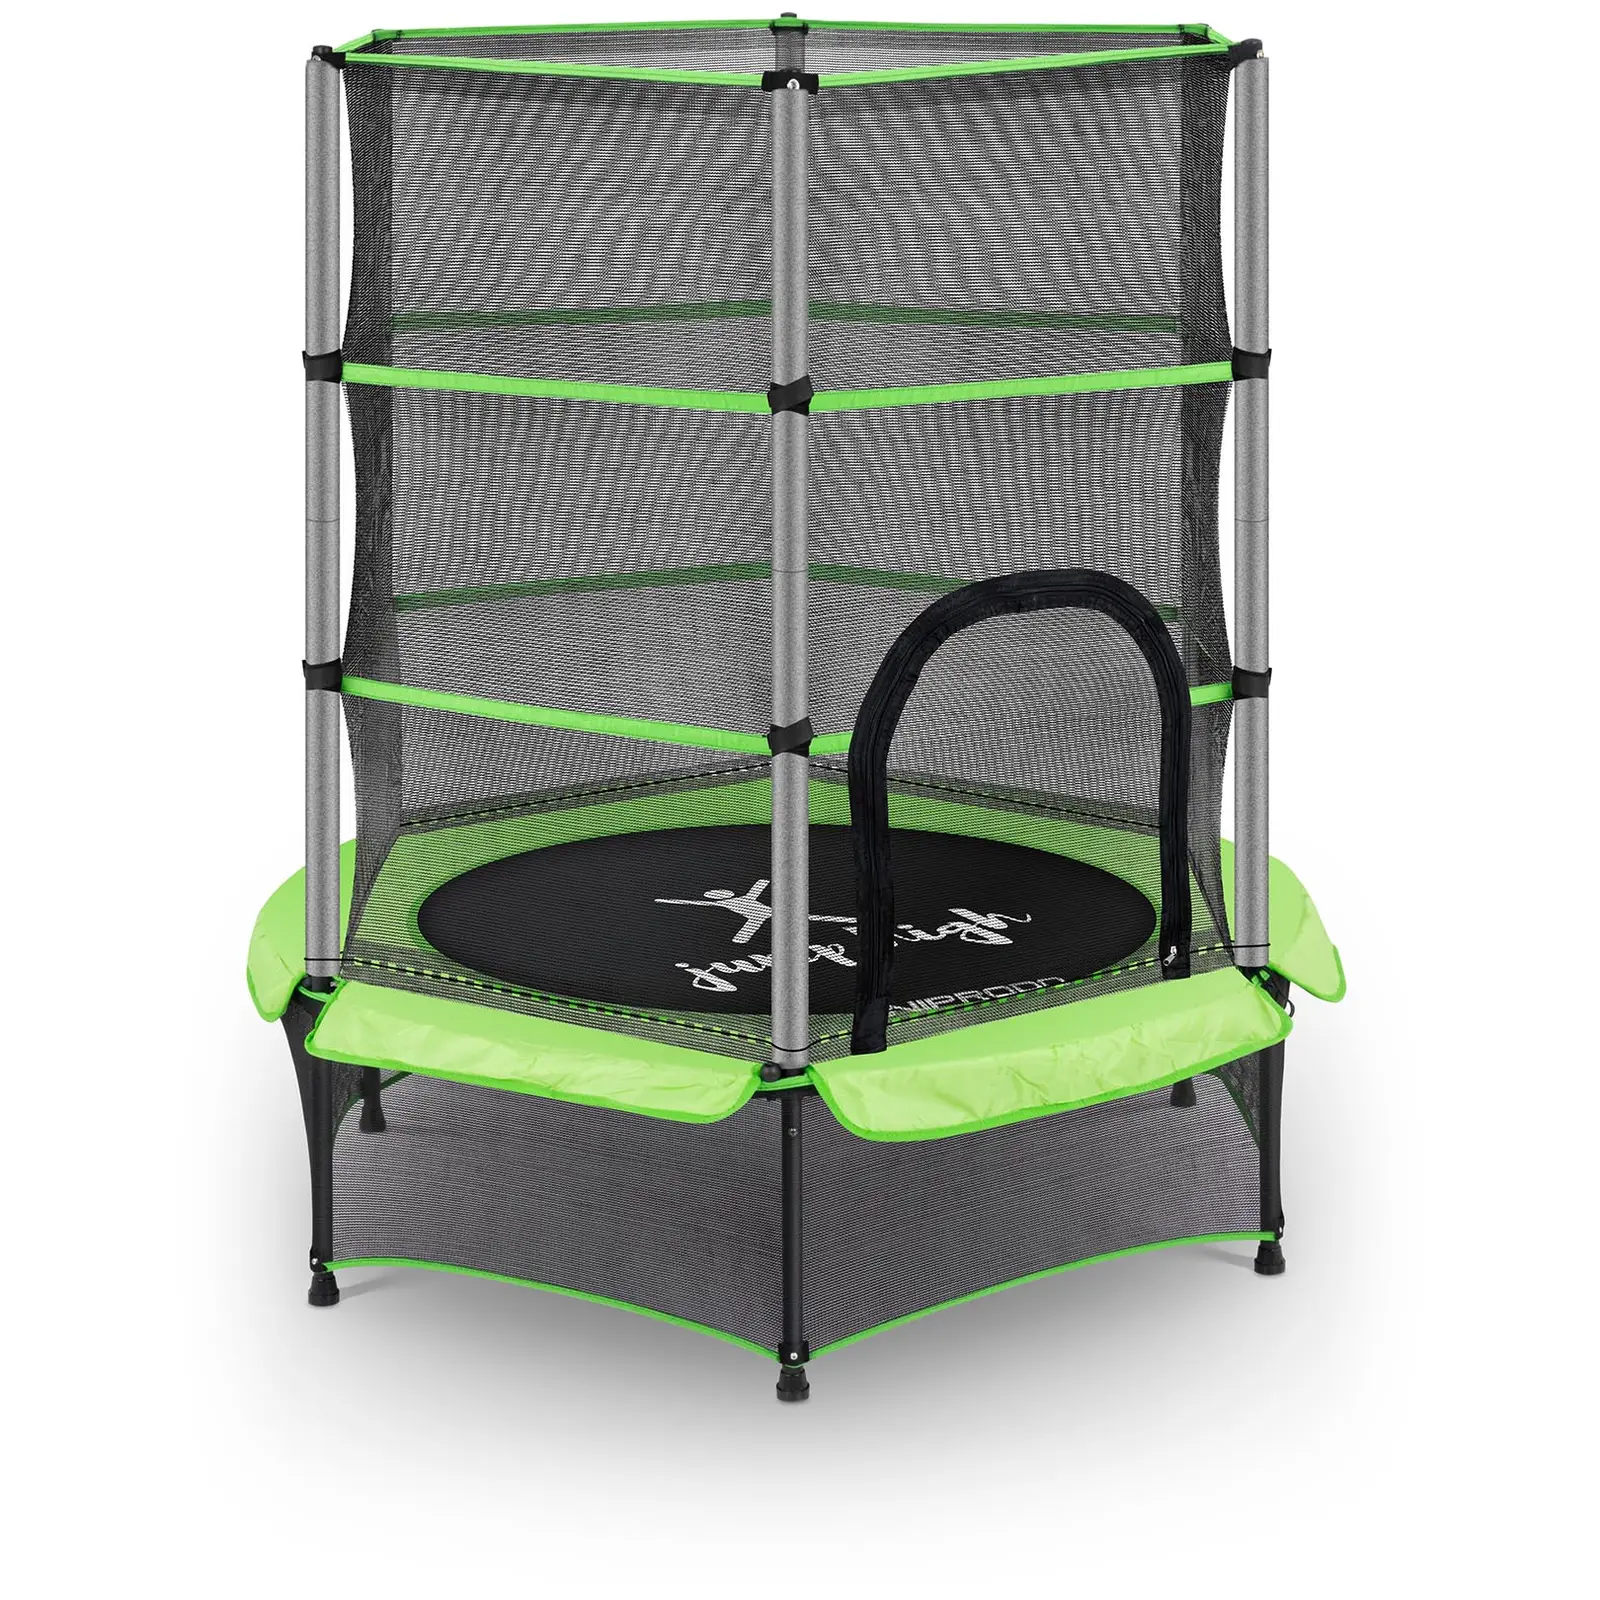 Dětská trampolína - s bezpečnostní sítí - 140 cm - 50 kg - zelená